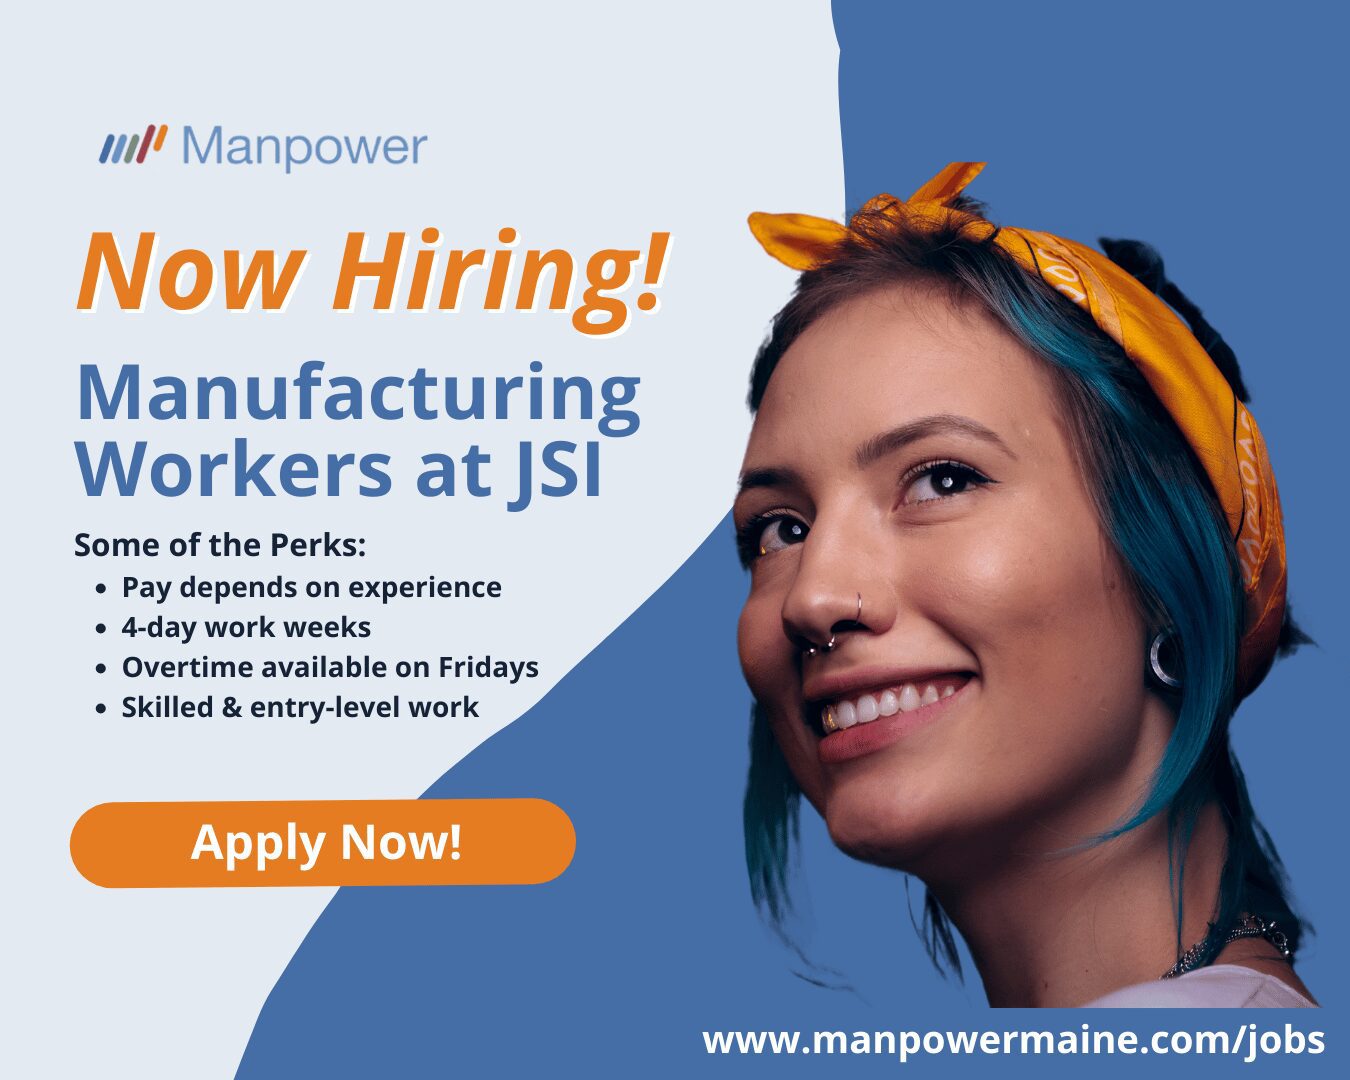 Variety of Manufacturing Jobs at JSI